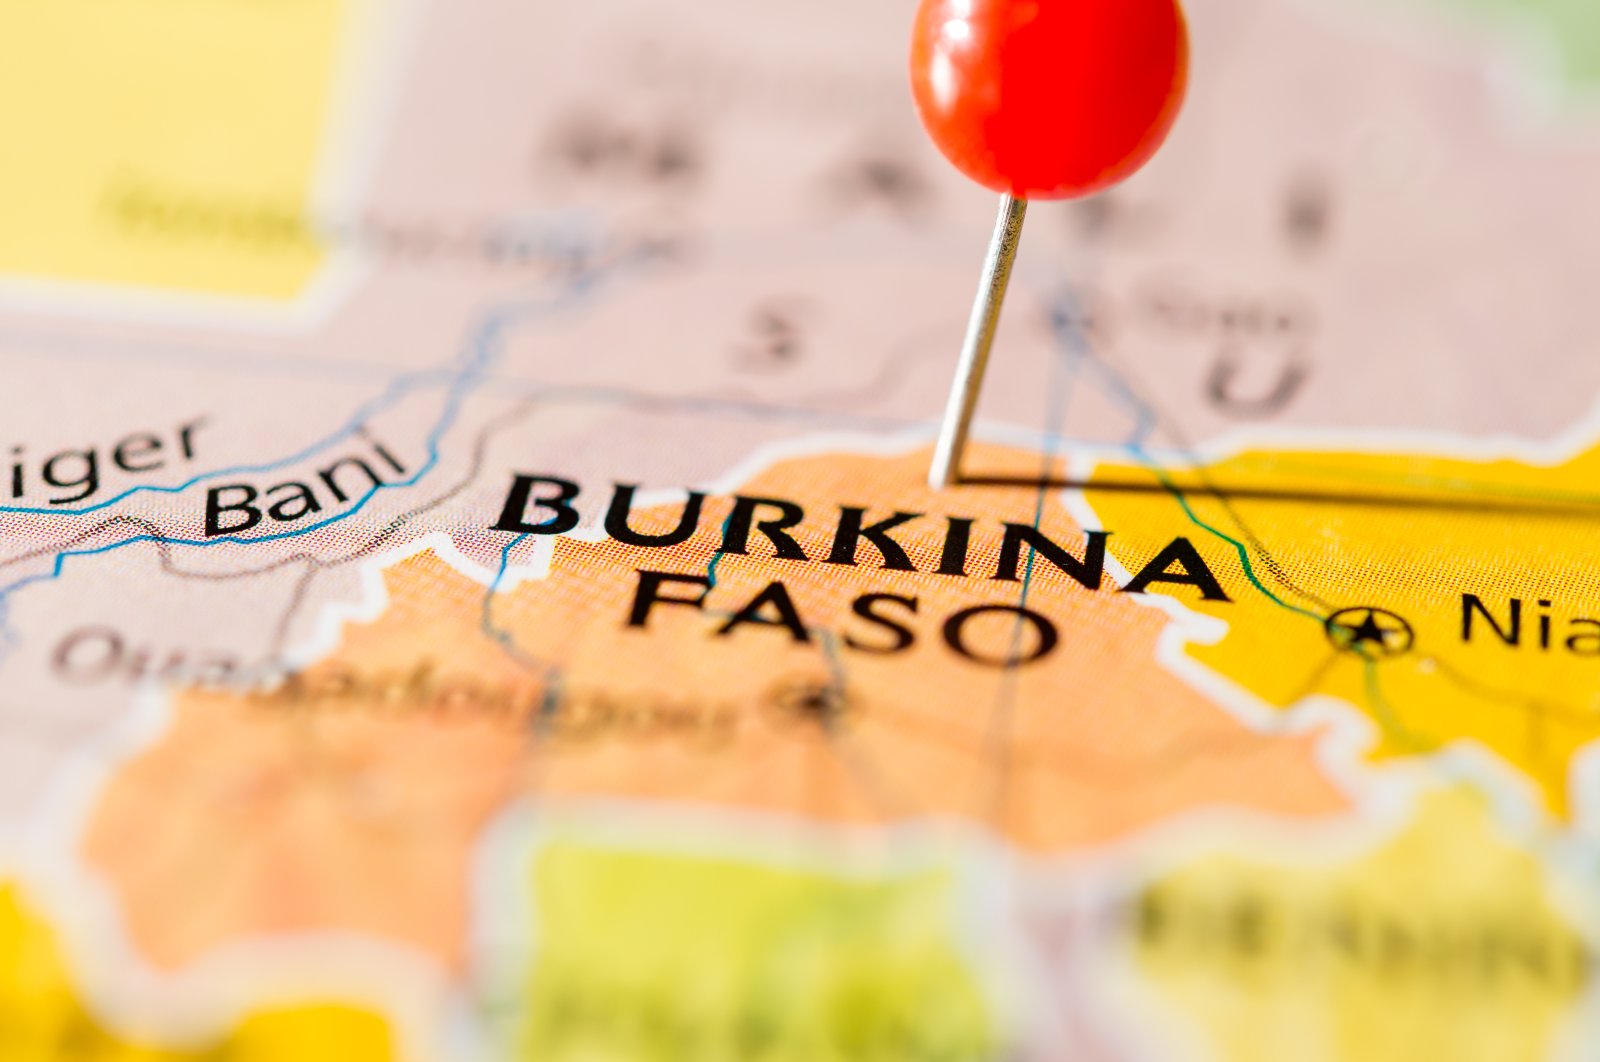 Pria bersenjata berseragam membunuh 60 warga sipil di Burkina Faso utara